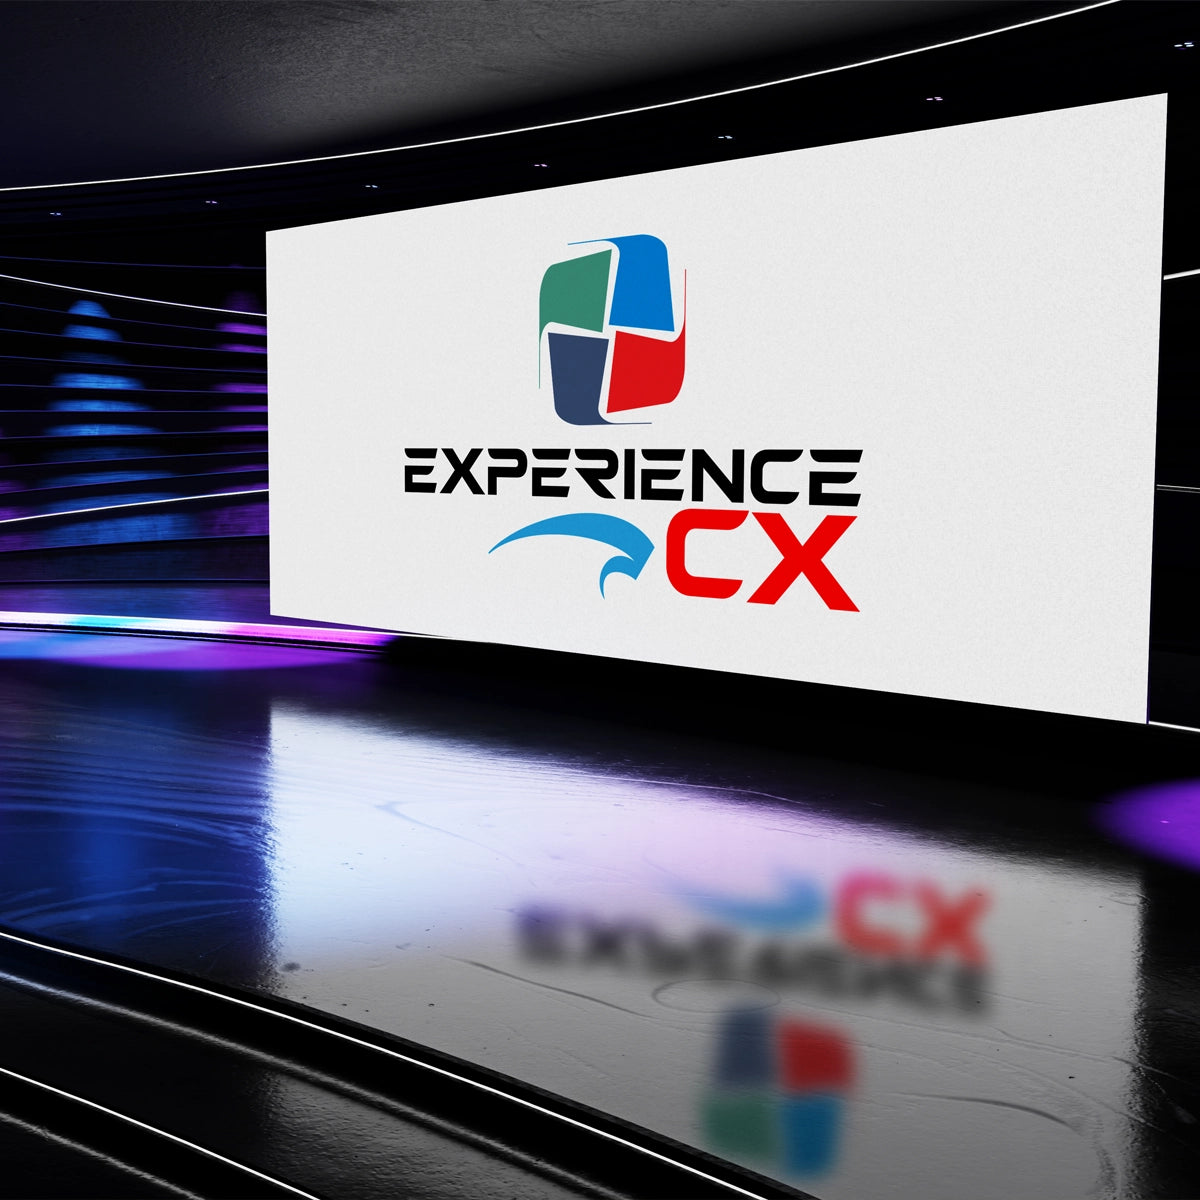 experiencecx.com